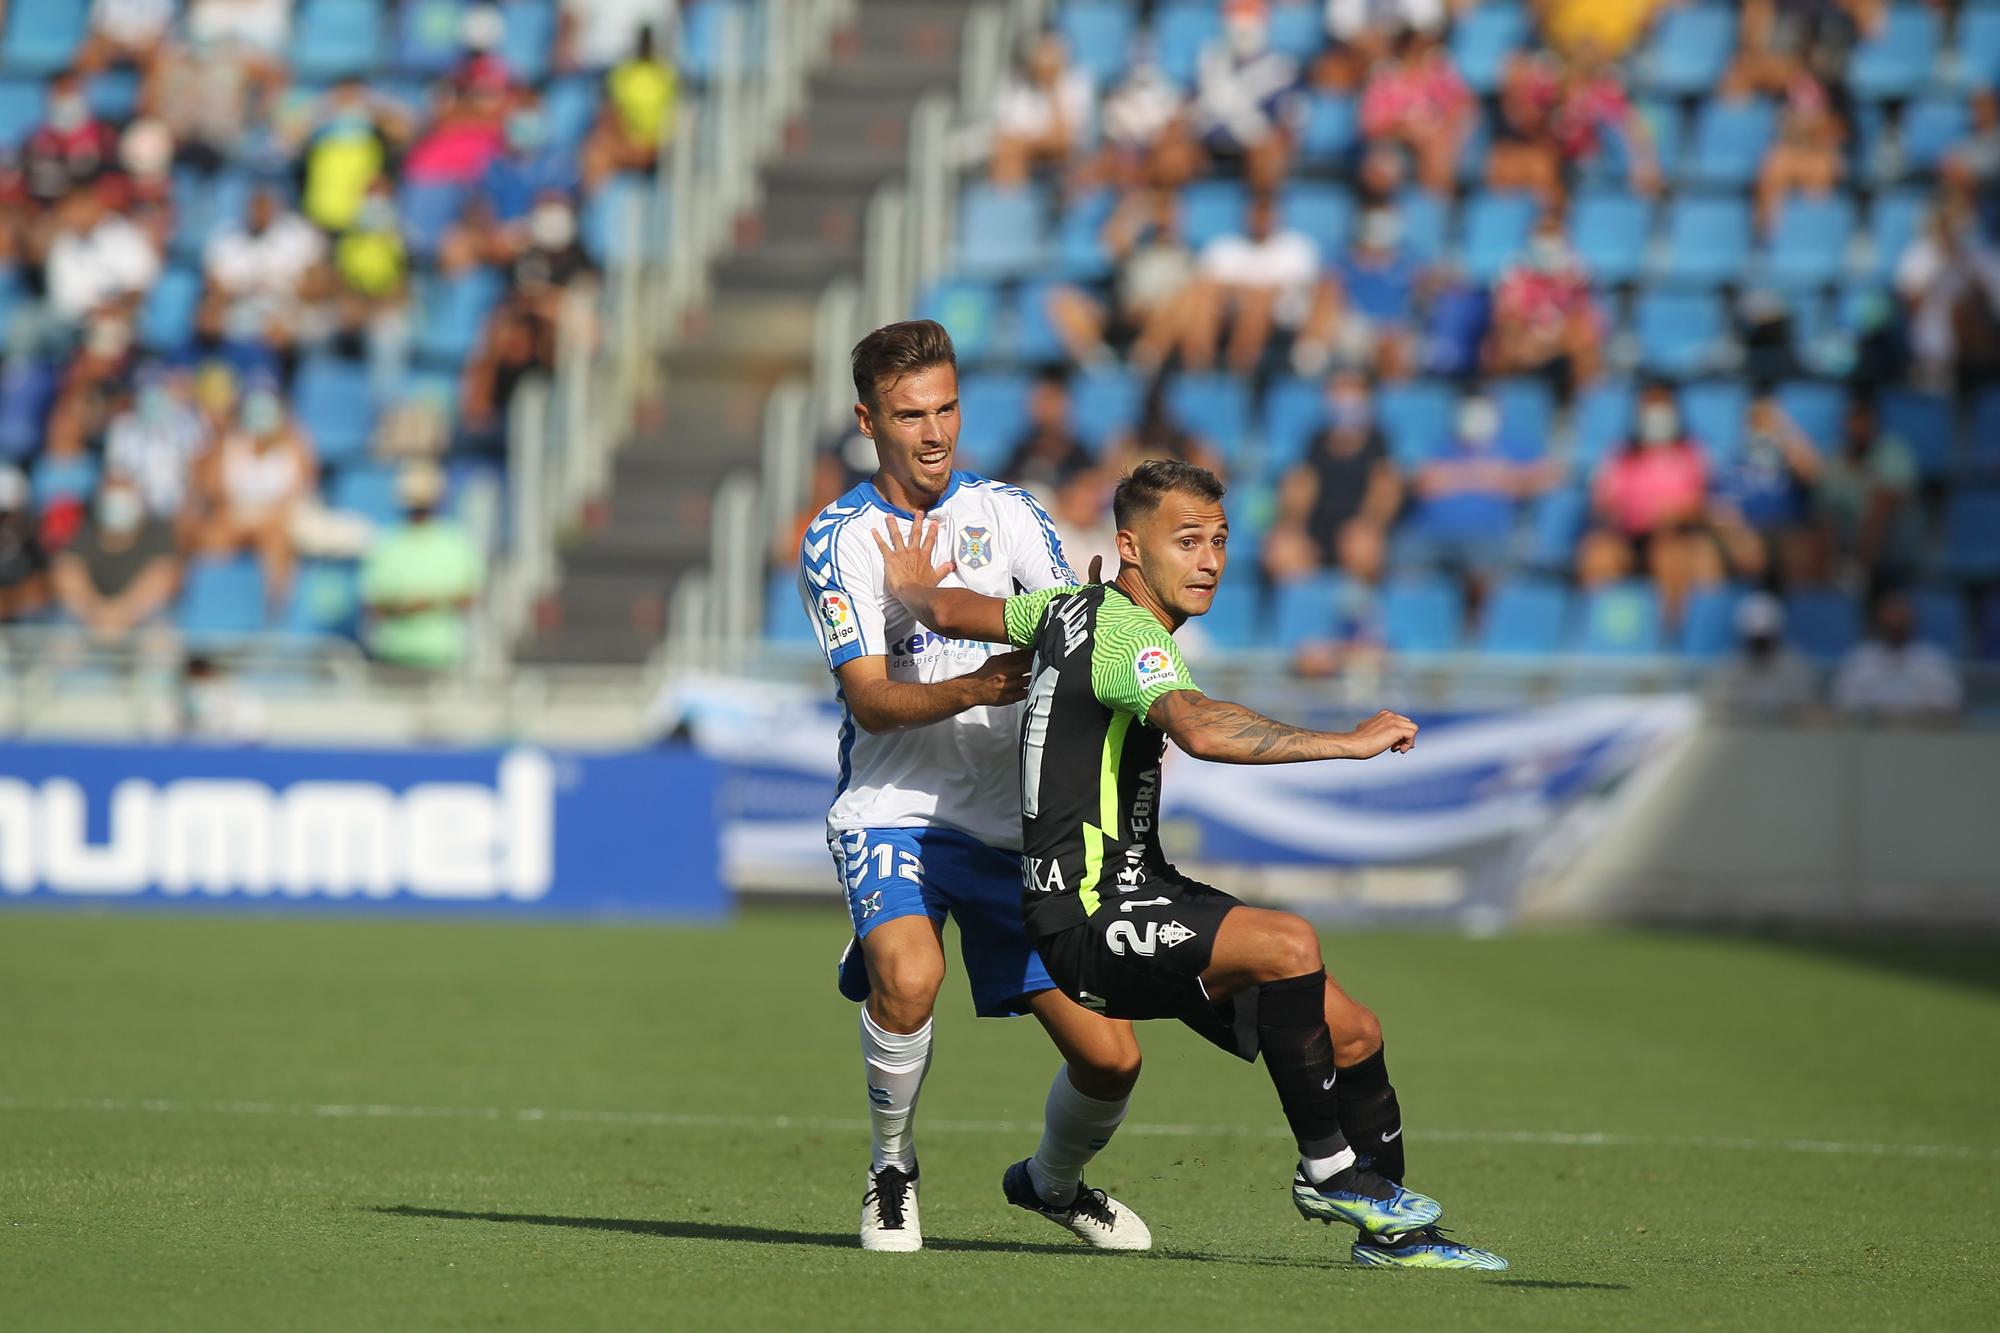 El partido entre el Tenerife y el Sporting, en imágenes